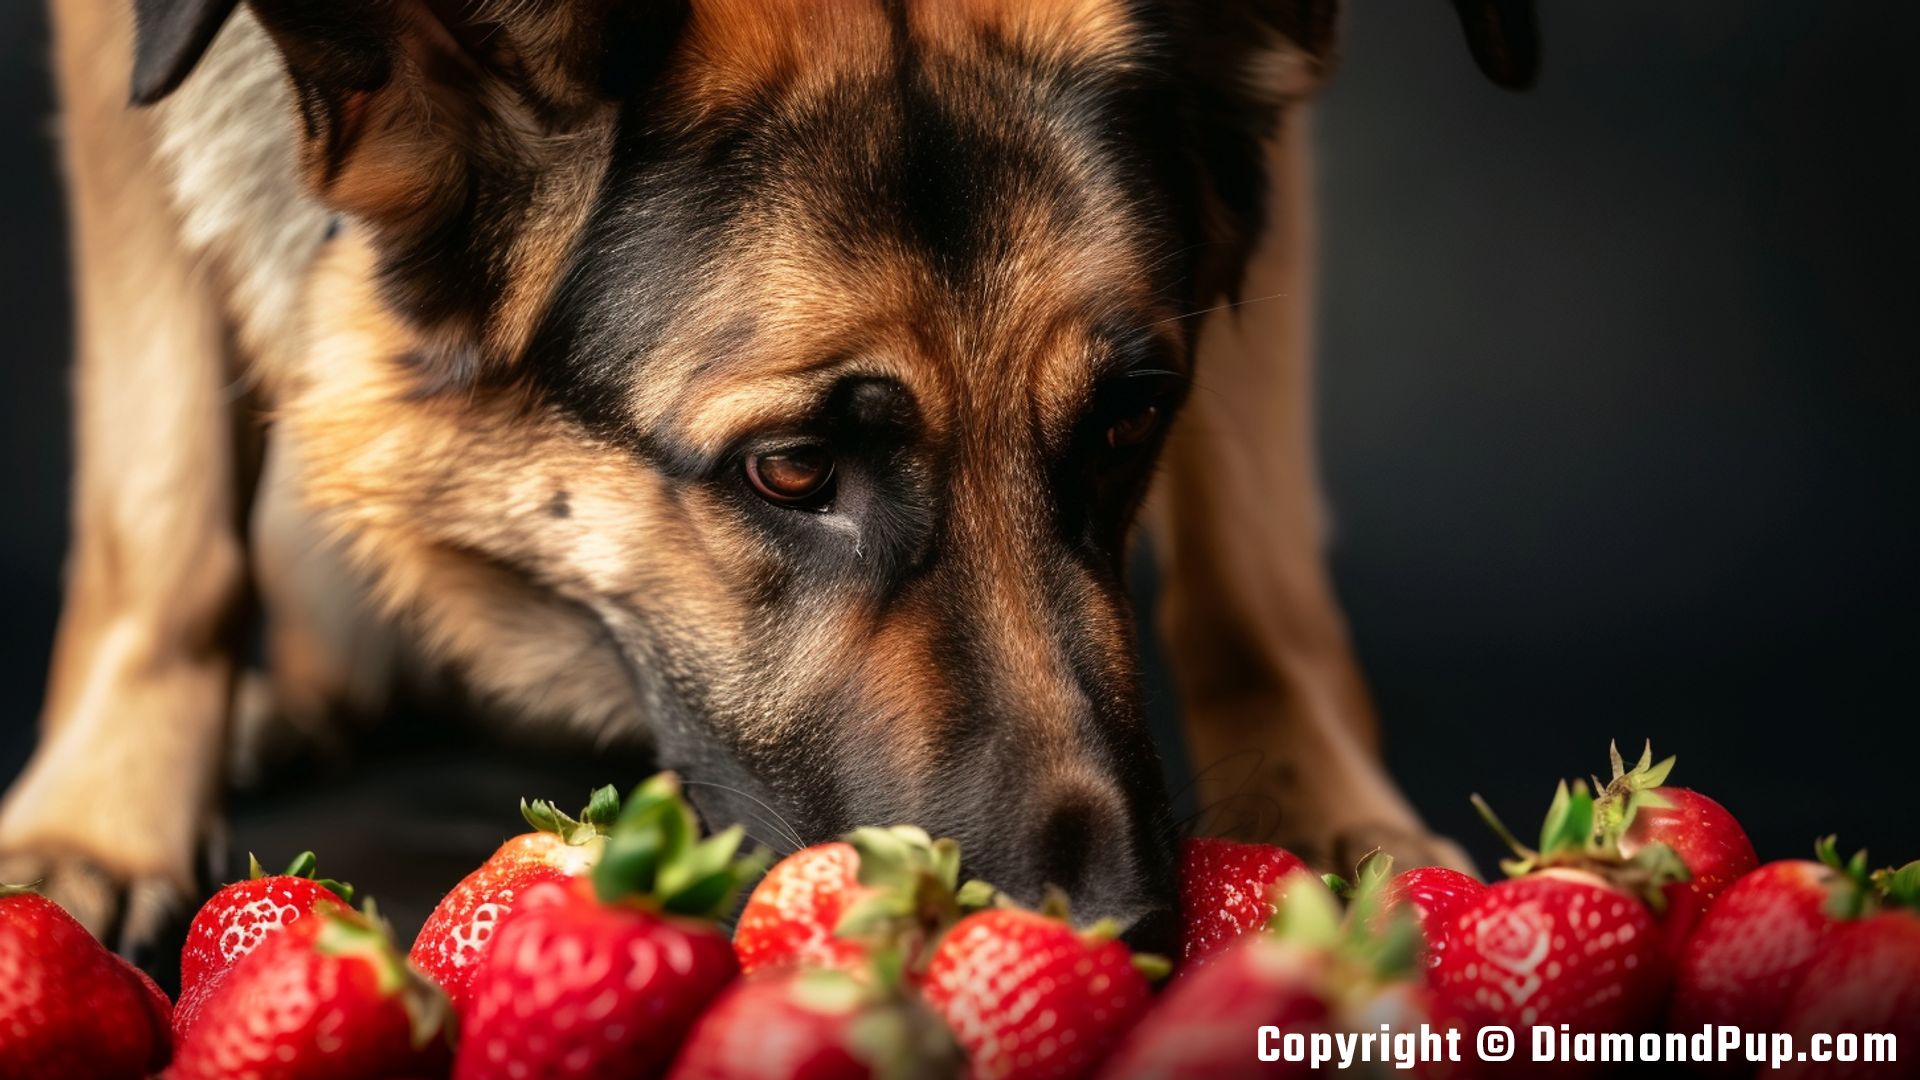 Image of German Shepherd Snacking on Strawberries